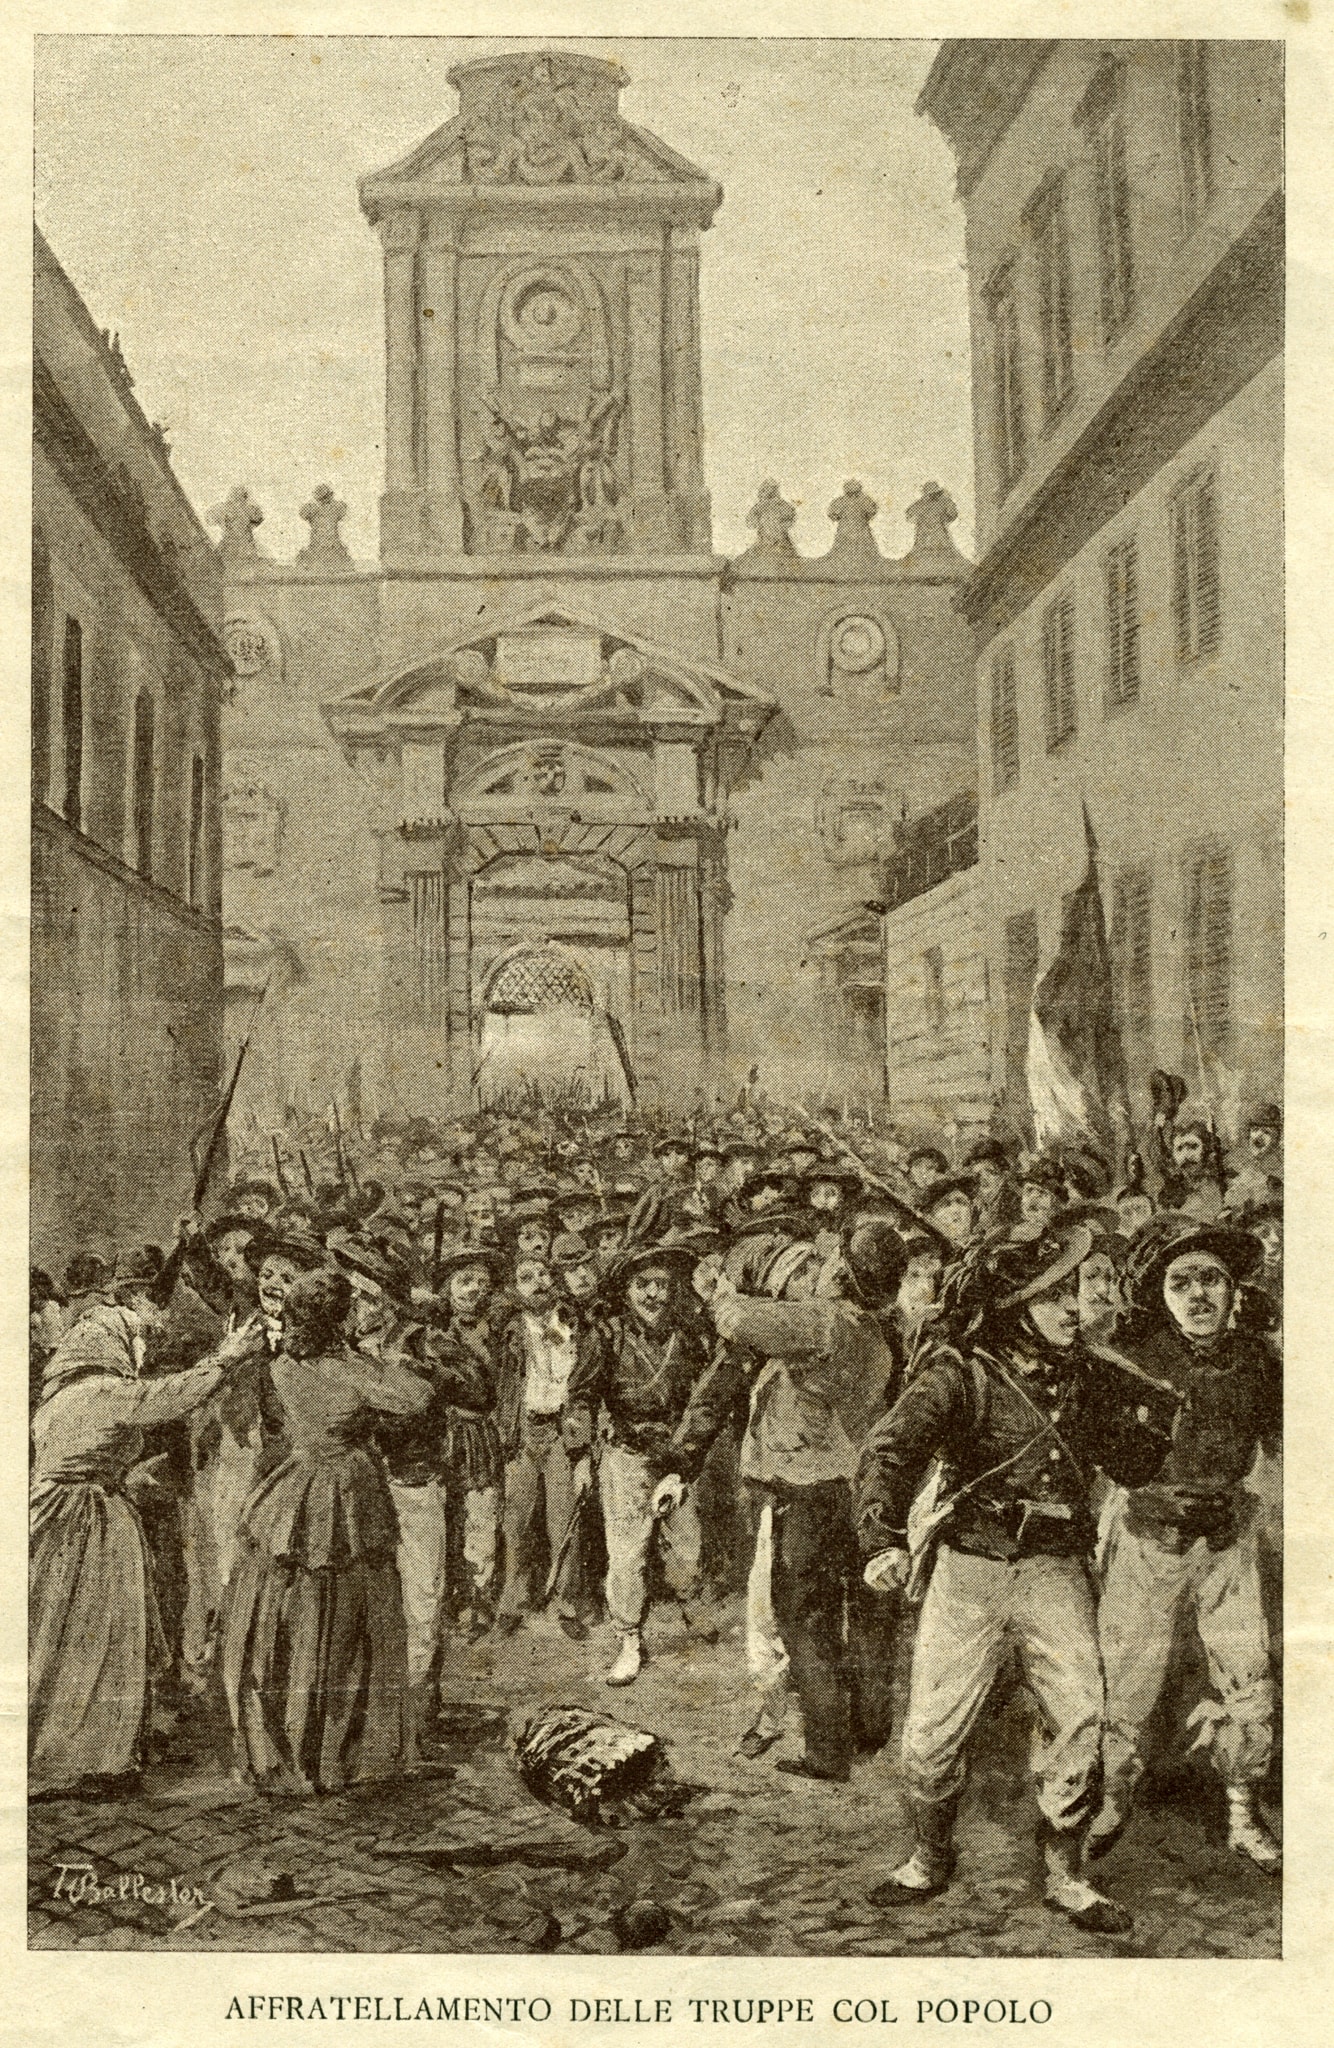 Incisione raffigurante l’affratellamento delle truppe col popolo. 20-21 settembre 1870